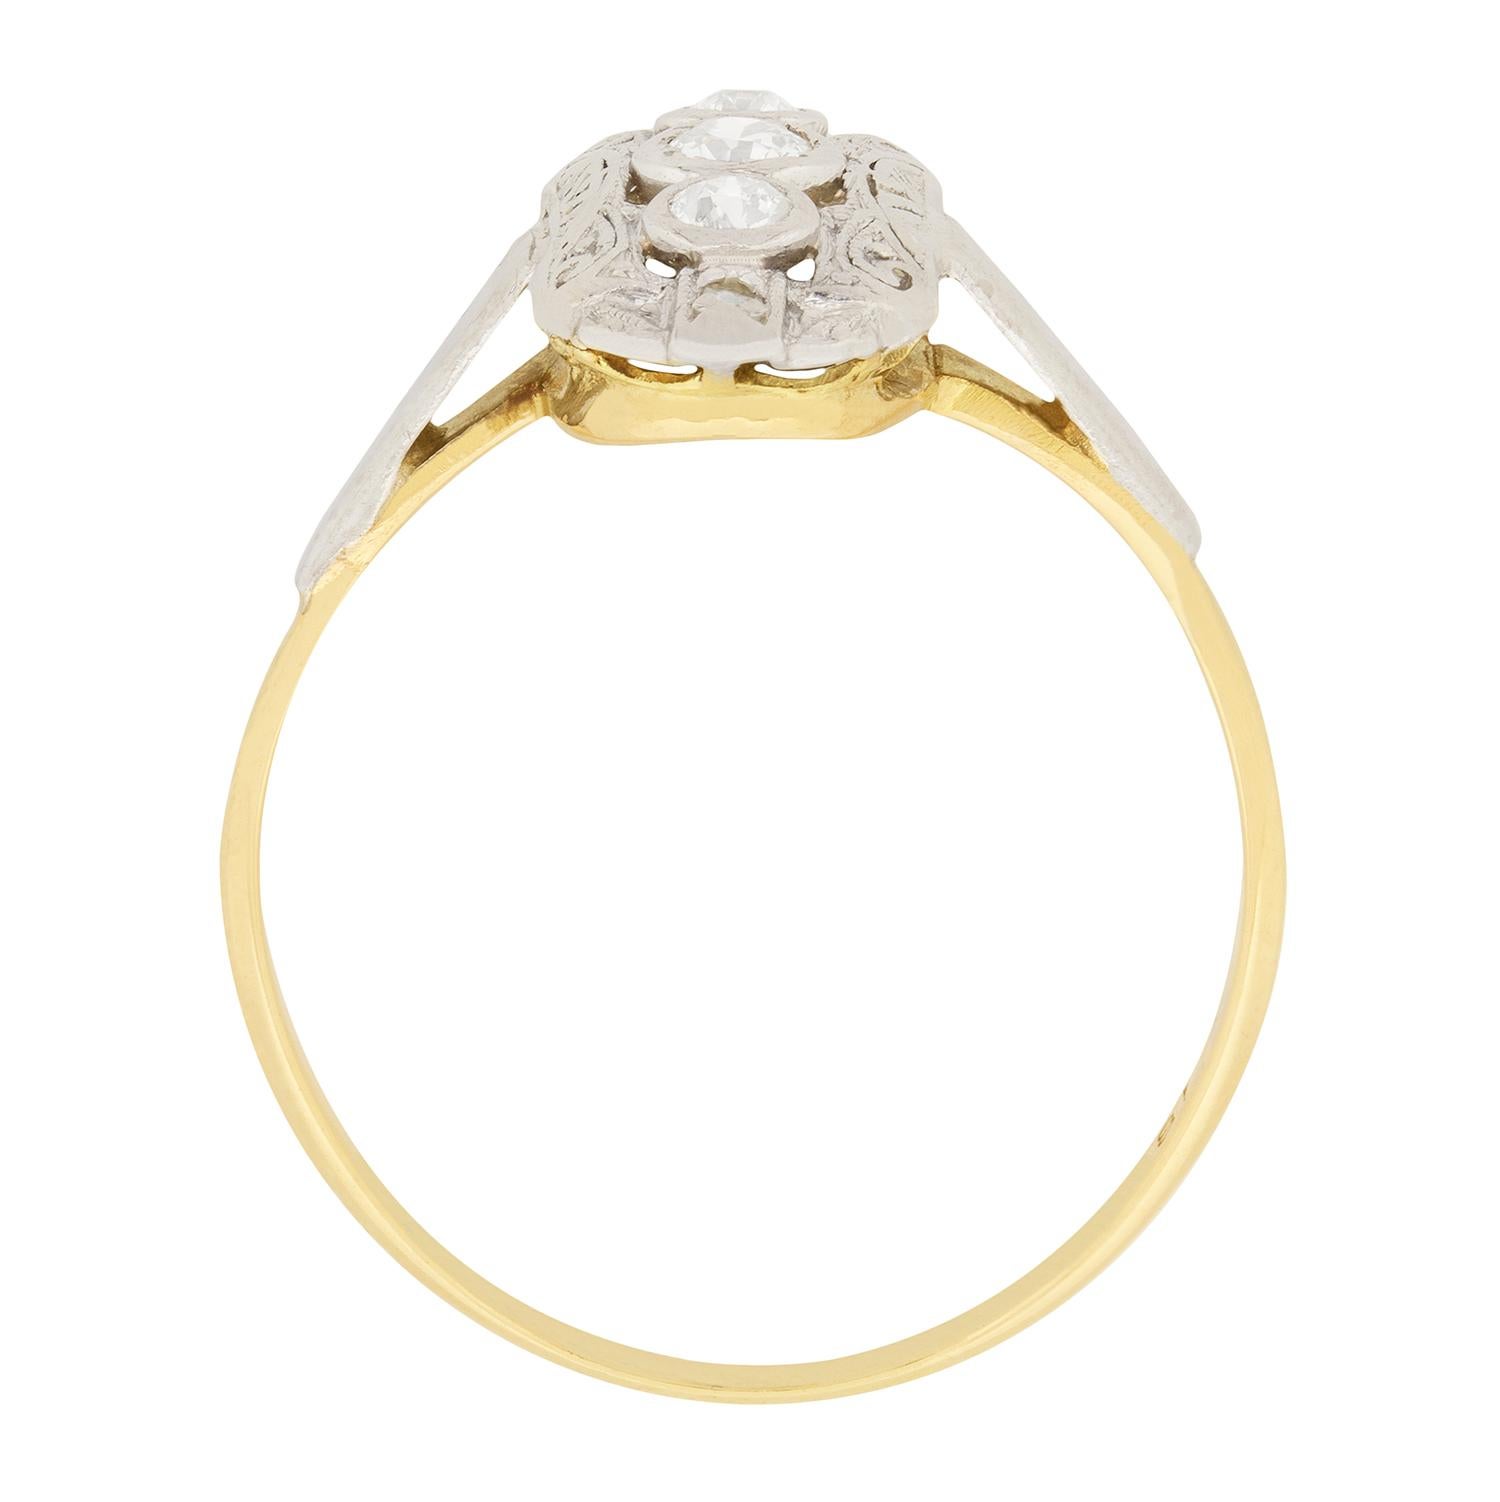 Dieser Diamant-Cluster-Ring ist ein schönes Beispiel für den Stil der Edwardianischen Periode. In der Mitte sitzt ein Diamant im Altschliff von 0,15 Karat, während sich darüber und darunter ein Diamant im Rosenschliff von 0,10 Karat befindet. Die